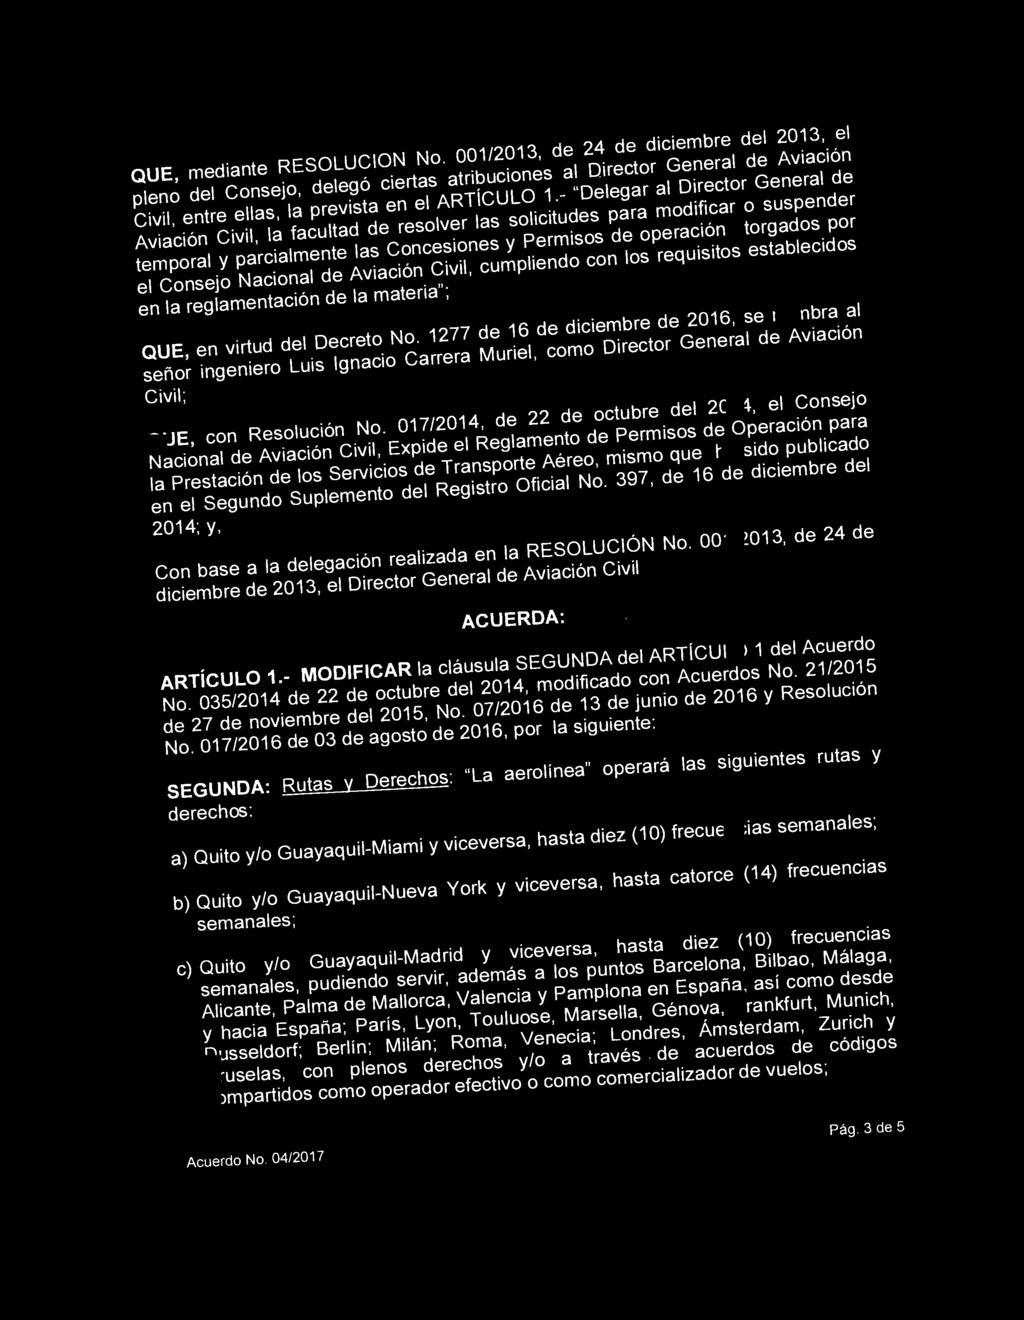 QUE, mediante RESOLUCION No. 001/2013, de 24 de diciembre del 2013, el pleno del Consejo, deleg6 ciertas atribuciones al Director General de Aviaci6n Civil, entre elias, Ia prevista en el ARTiCULO 1.